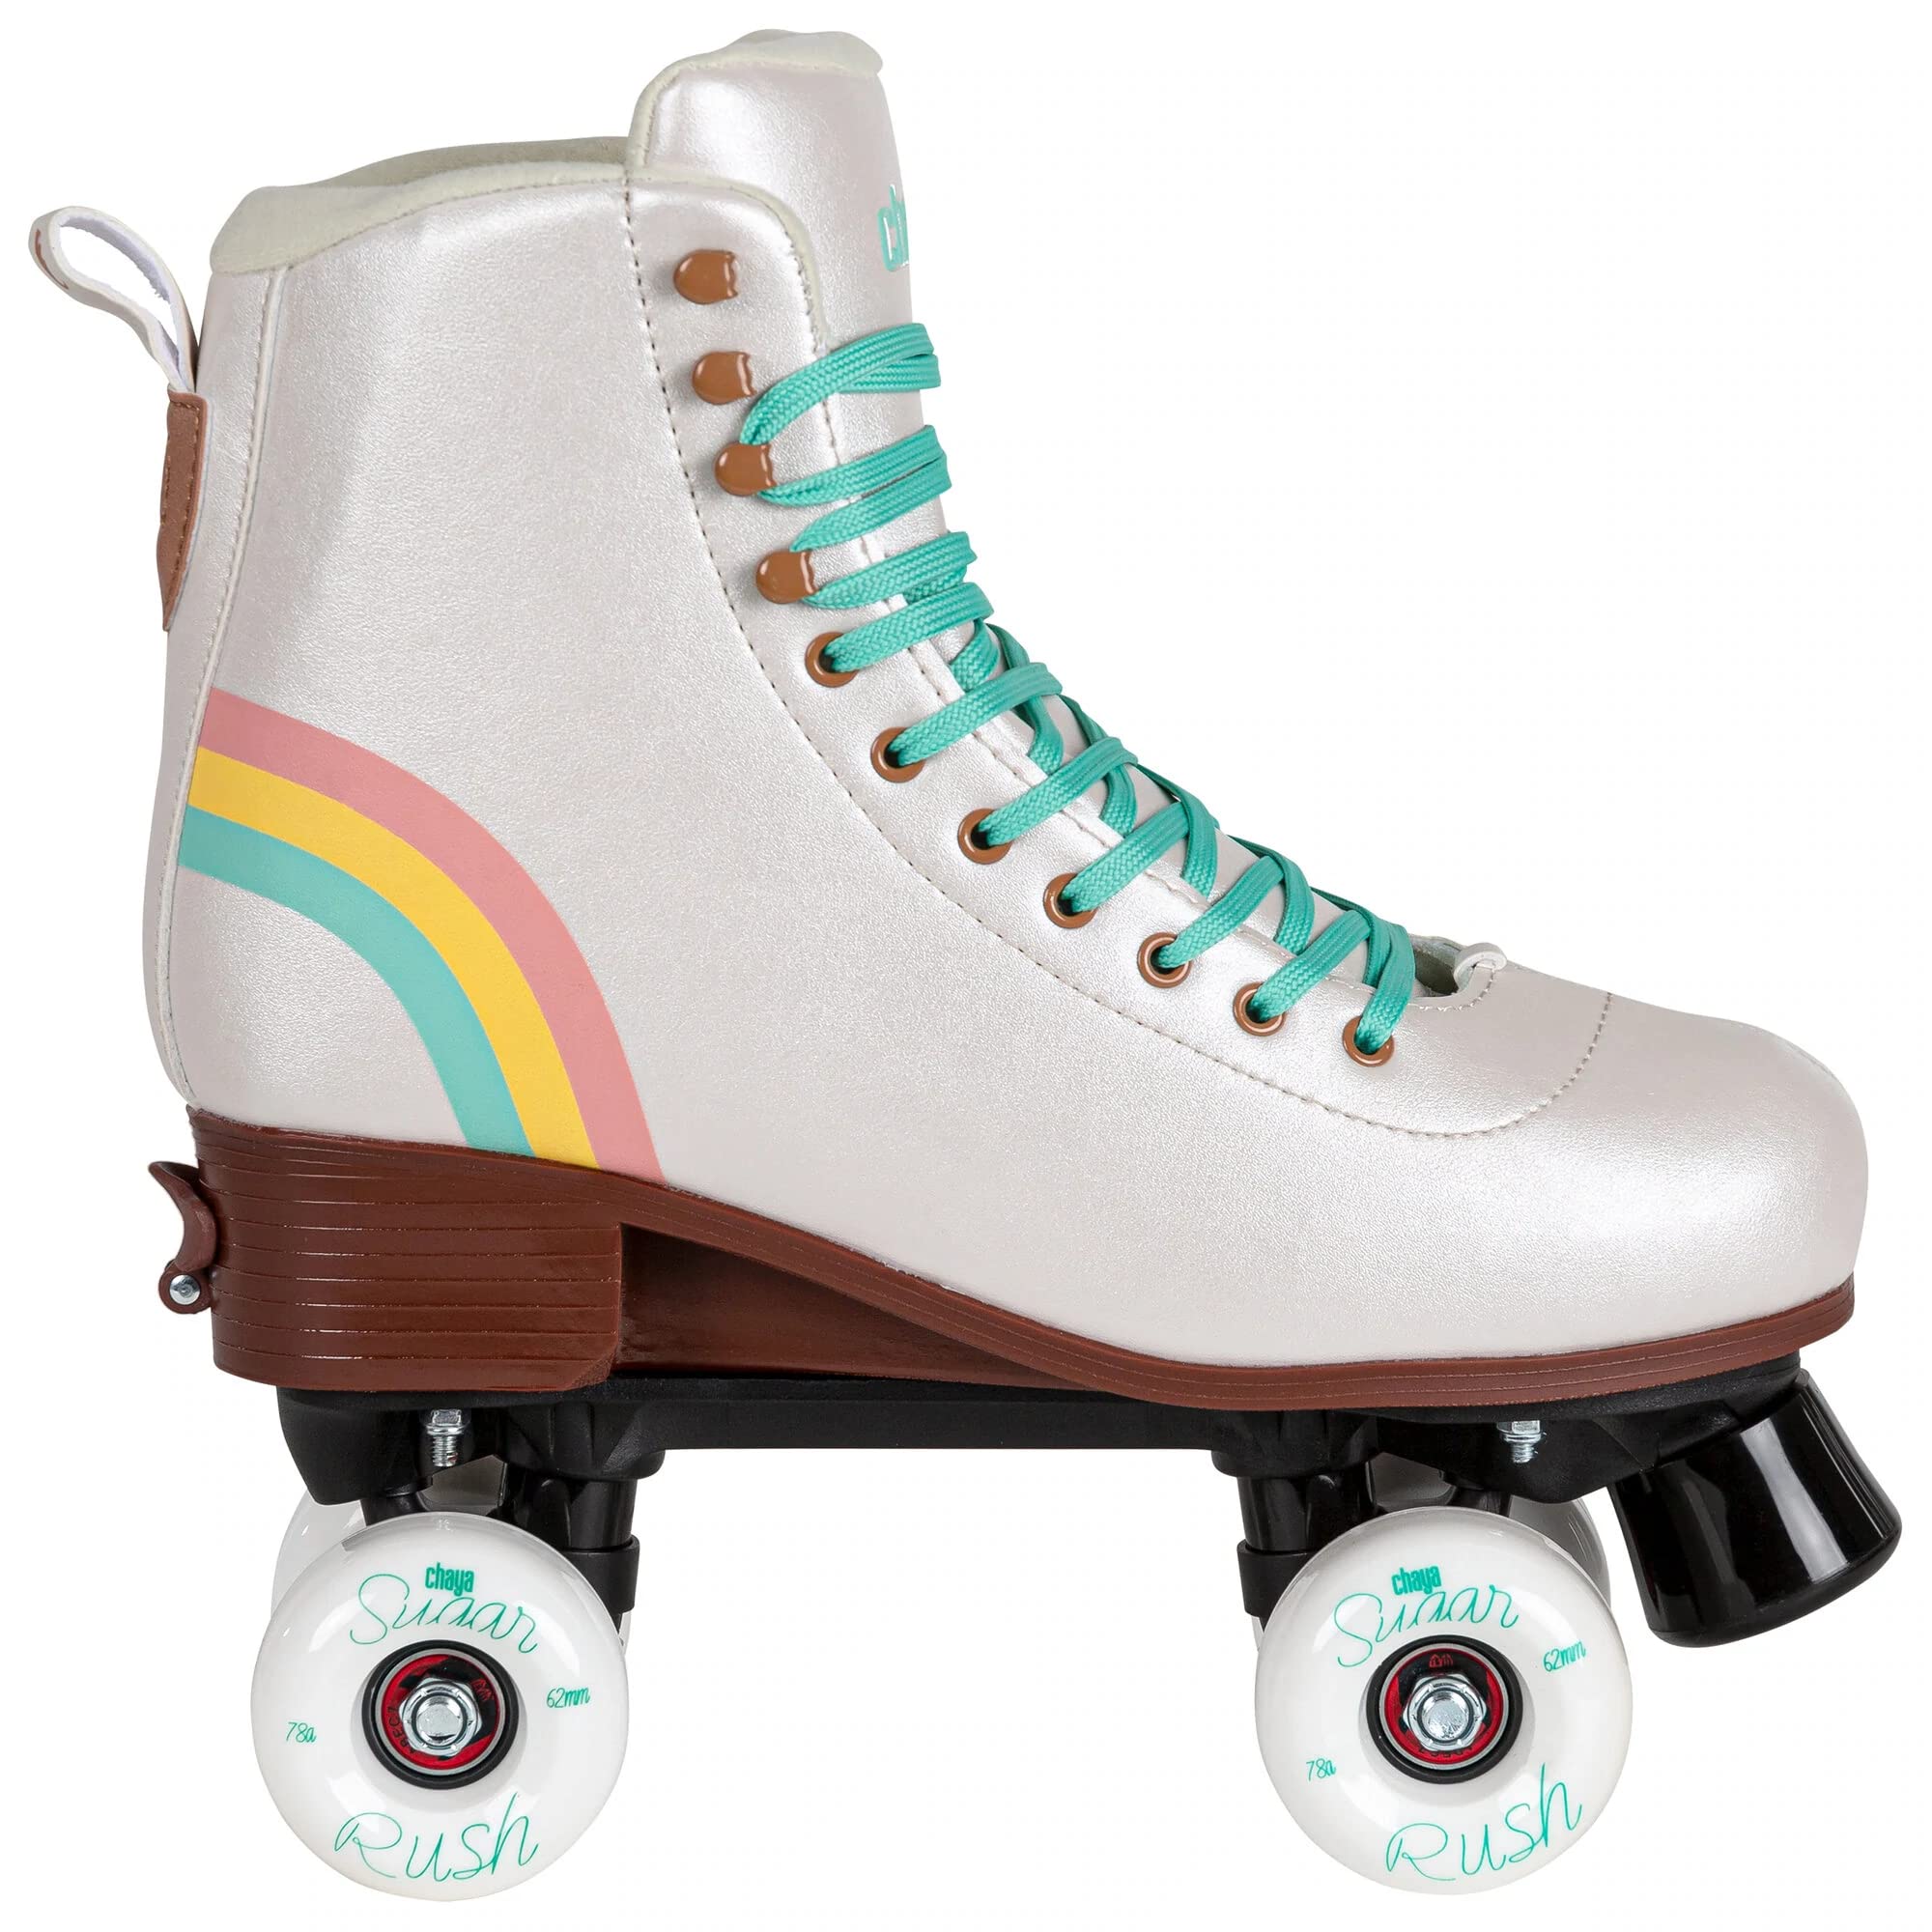 Chaya Roller Skates Bliss Vanilla, größenverstellbar, für Kinder in Vanille, 59mm/78A Rollen, ABEC 7 Kugellager, Art. nr.: 810719